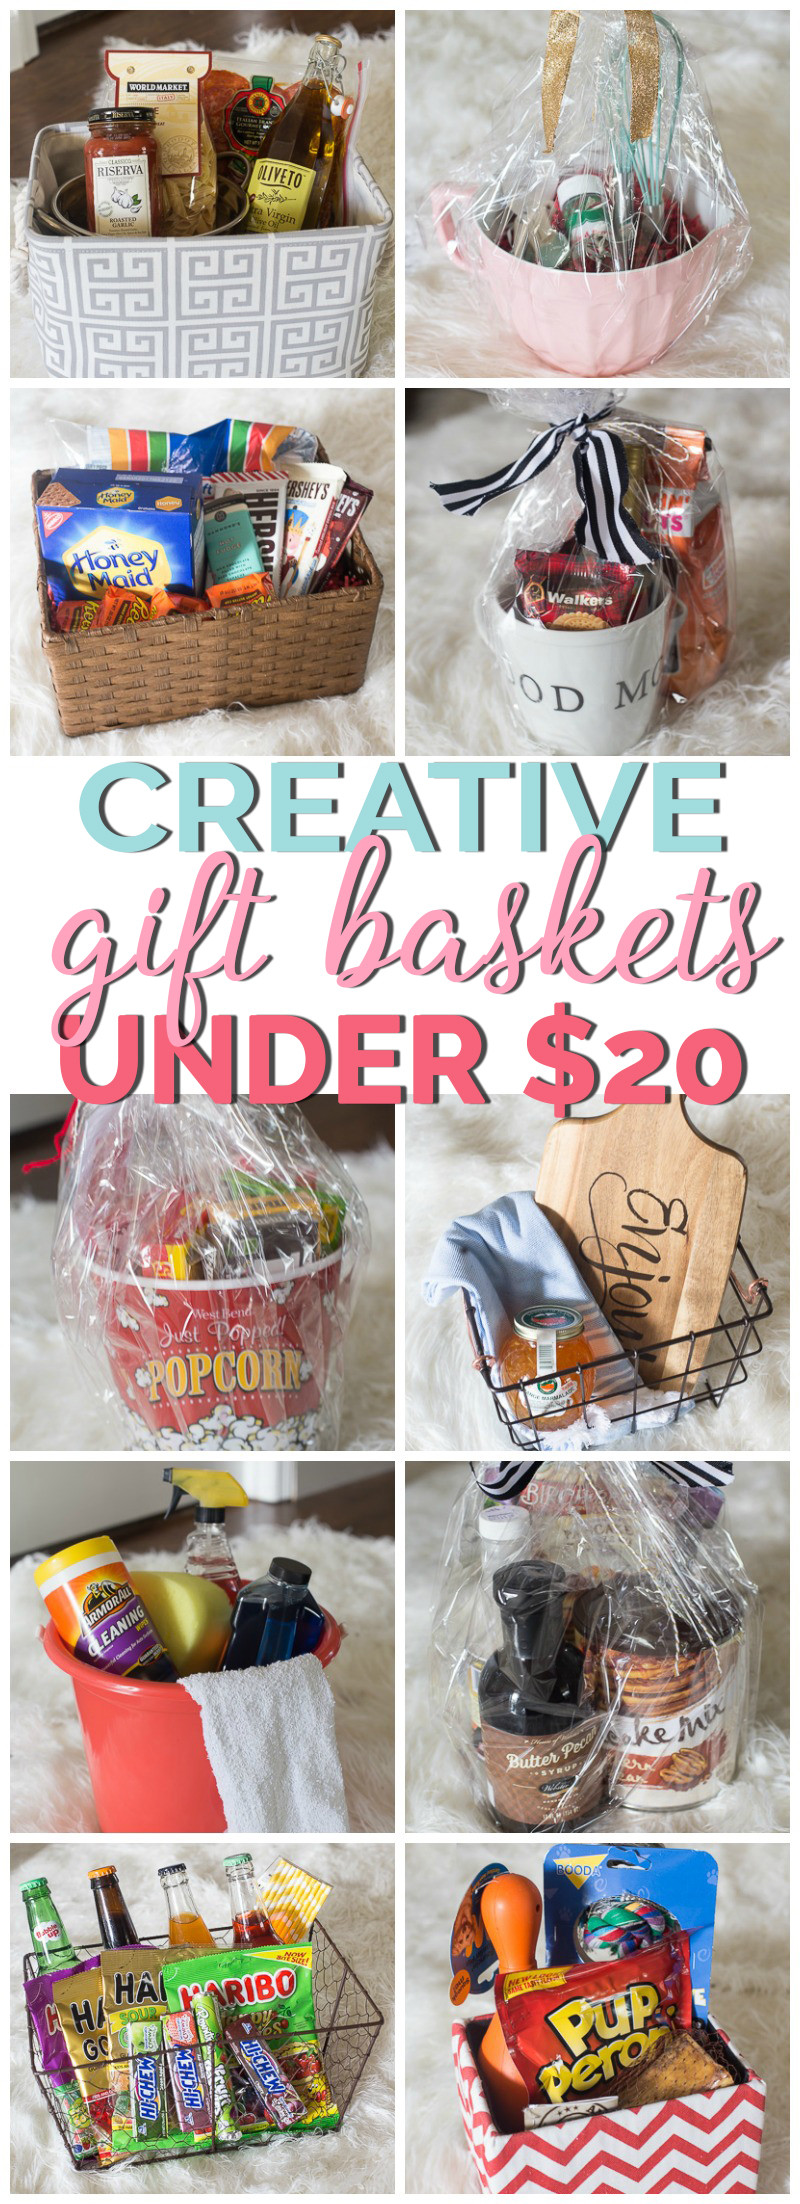 Gift Baskets Ideas For Work
 Creative Gift Basket Ideas Under $20